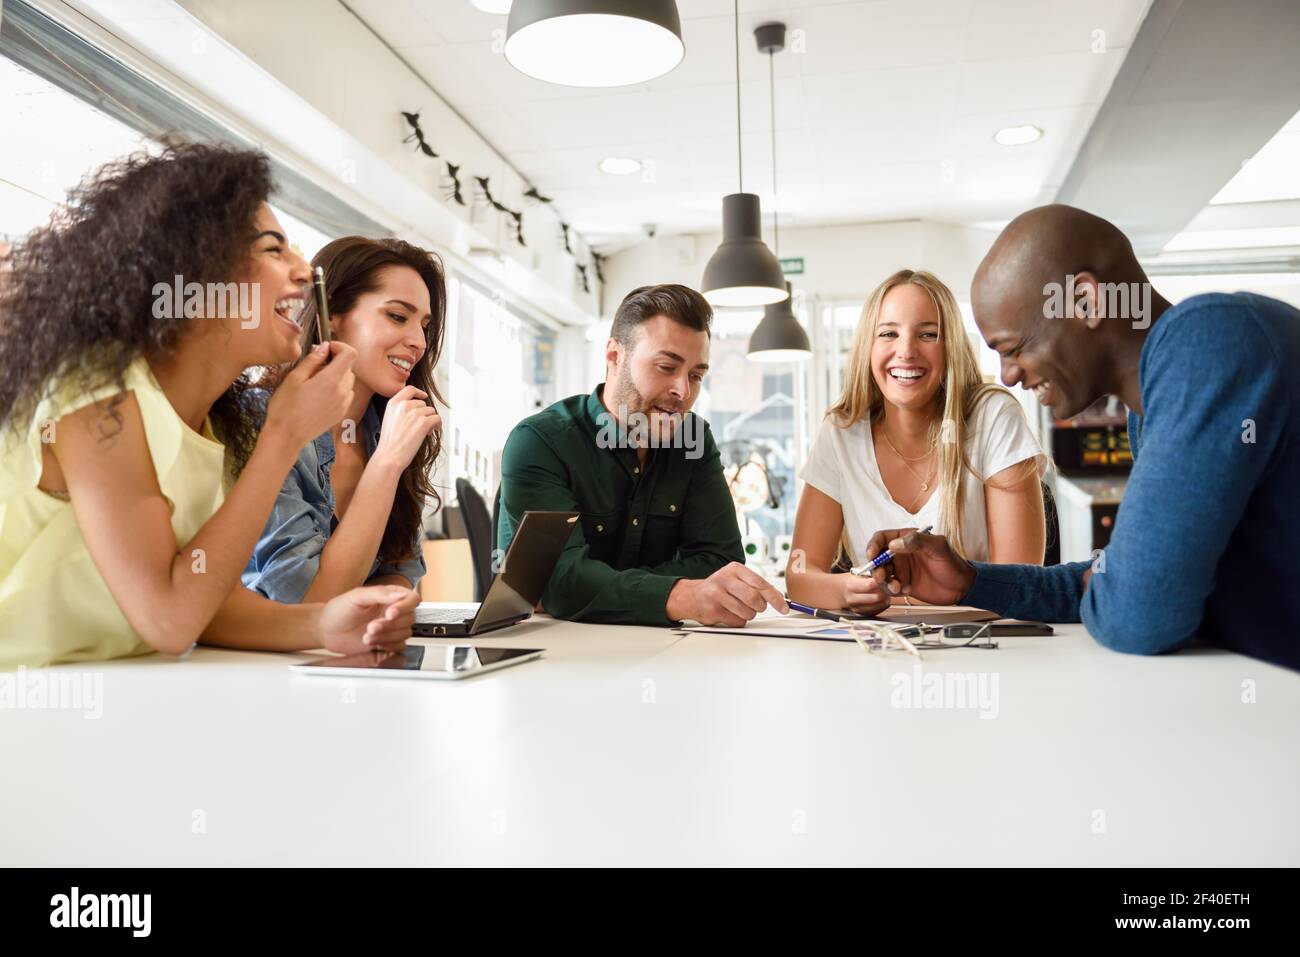 Cinque giovani che studiano con computer portatili e i computer tablet sulla scrivania bianca. Belle ragazze e ragazzi che lavorano insieme di indossare un abbigliamento informale. Multi-etnico gruppo sorridente. Foto Stock